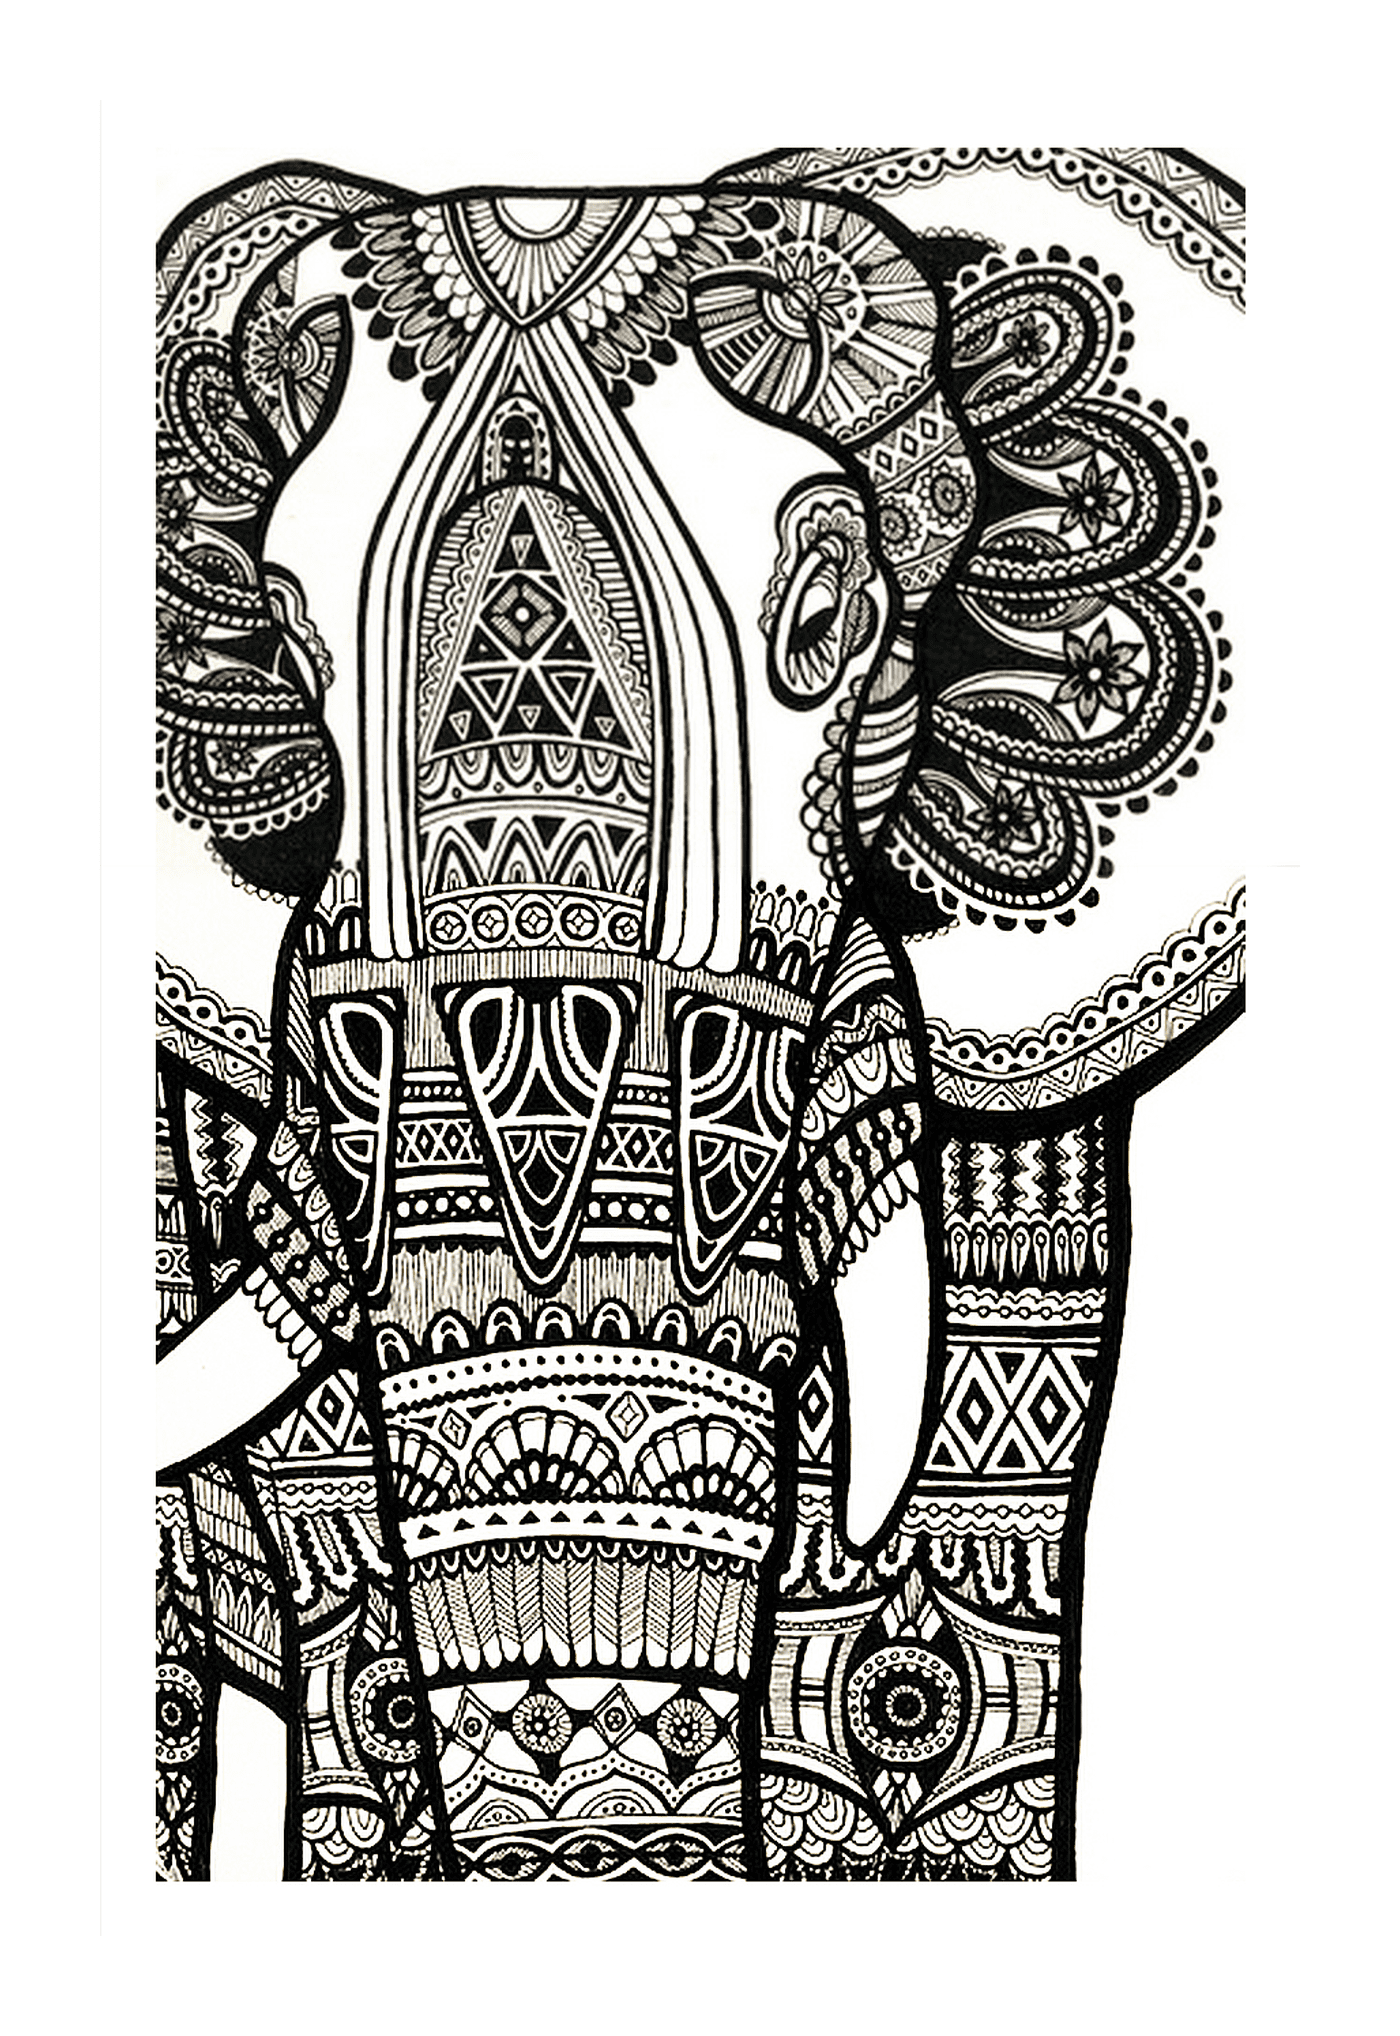  एक भारतीय हाथी के साथ जटिल चित्र 